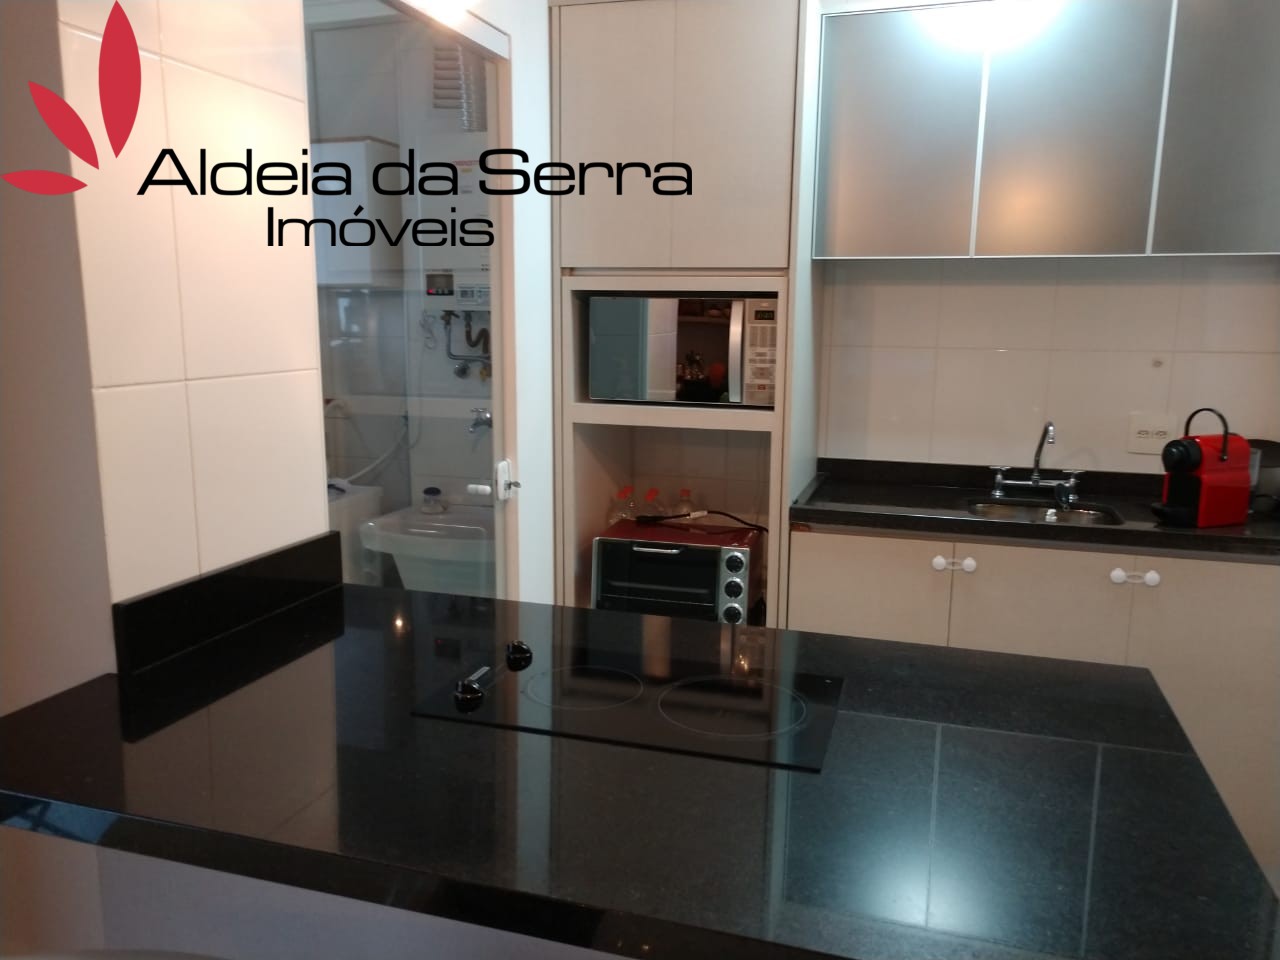 /admin/imoveis/fotos/IMG-20211203-WA0044.jpg Aldeia da Serra Imoveis